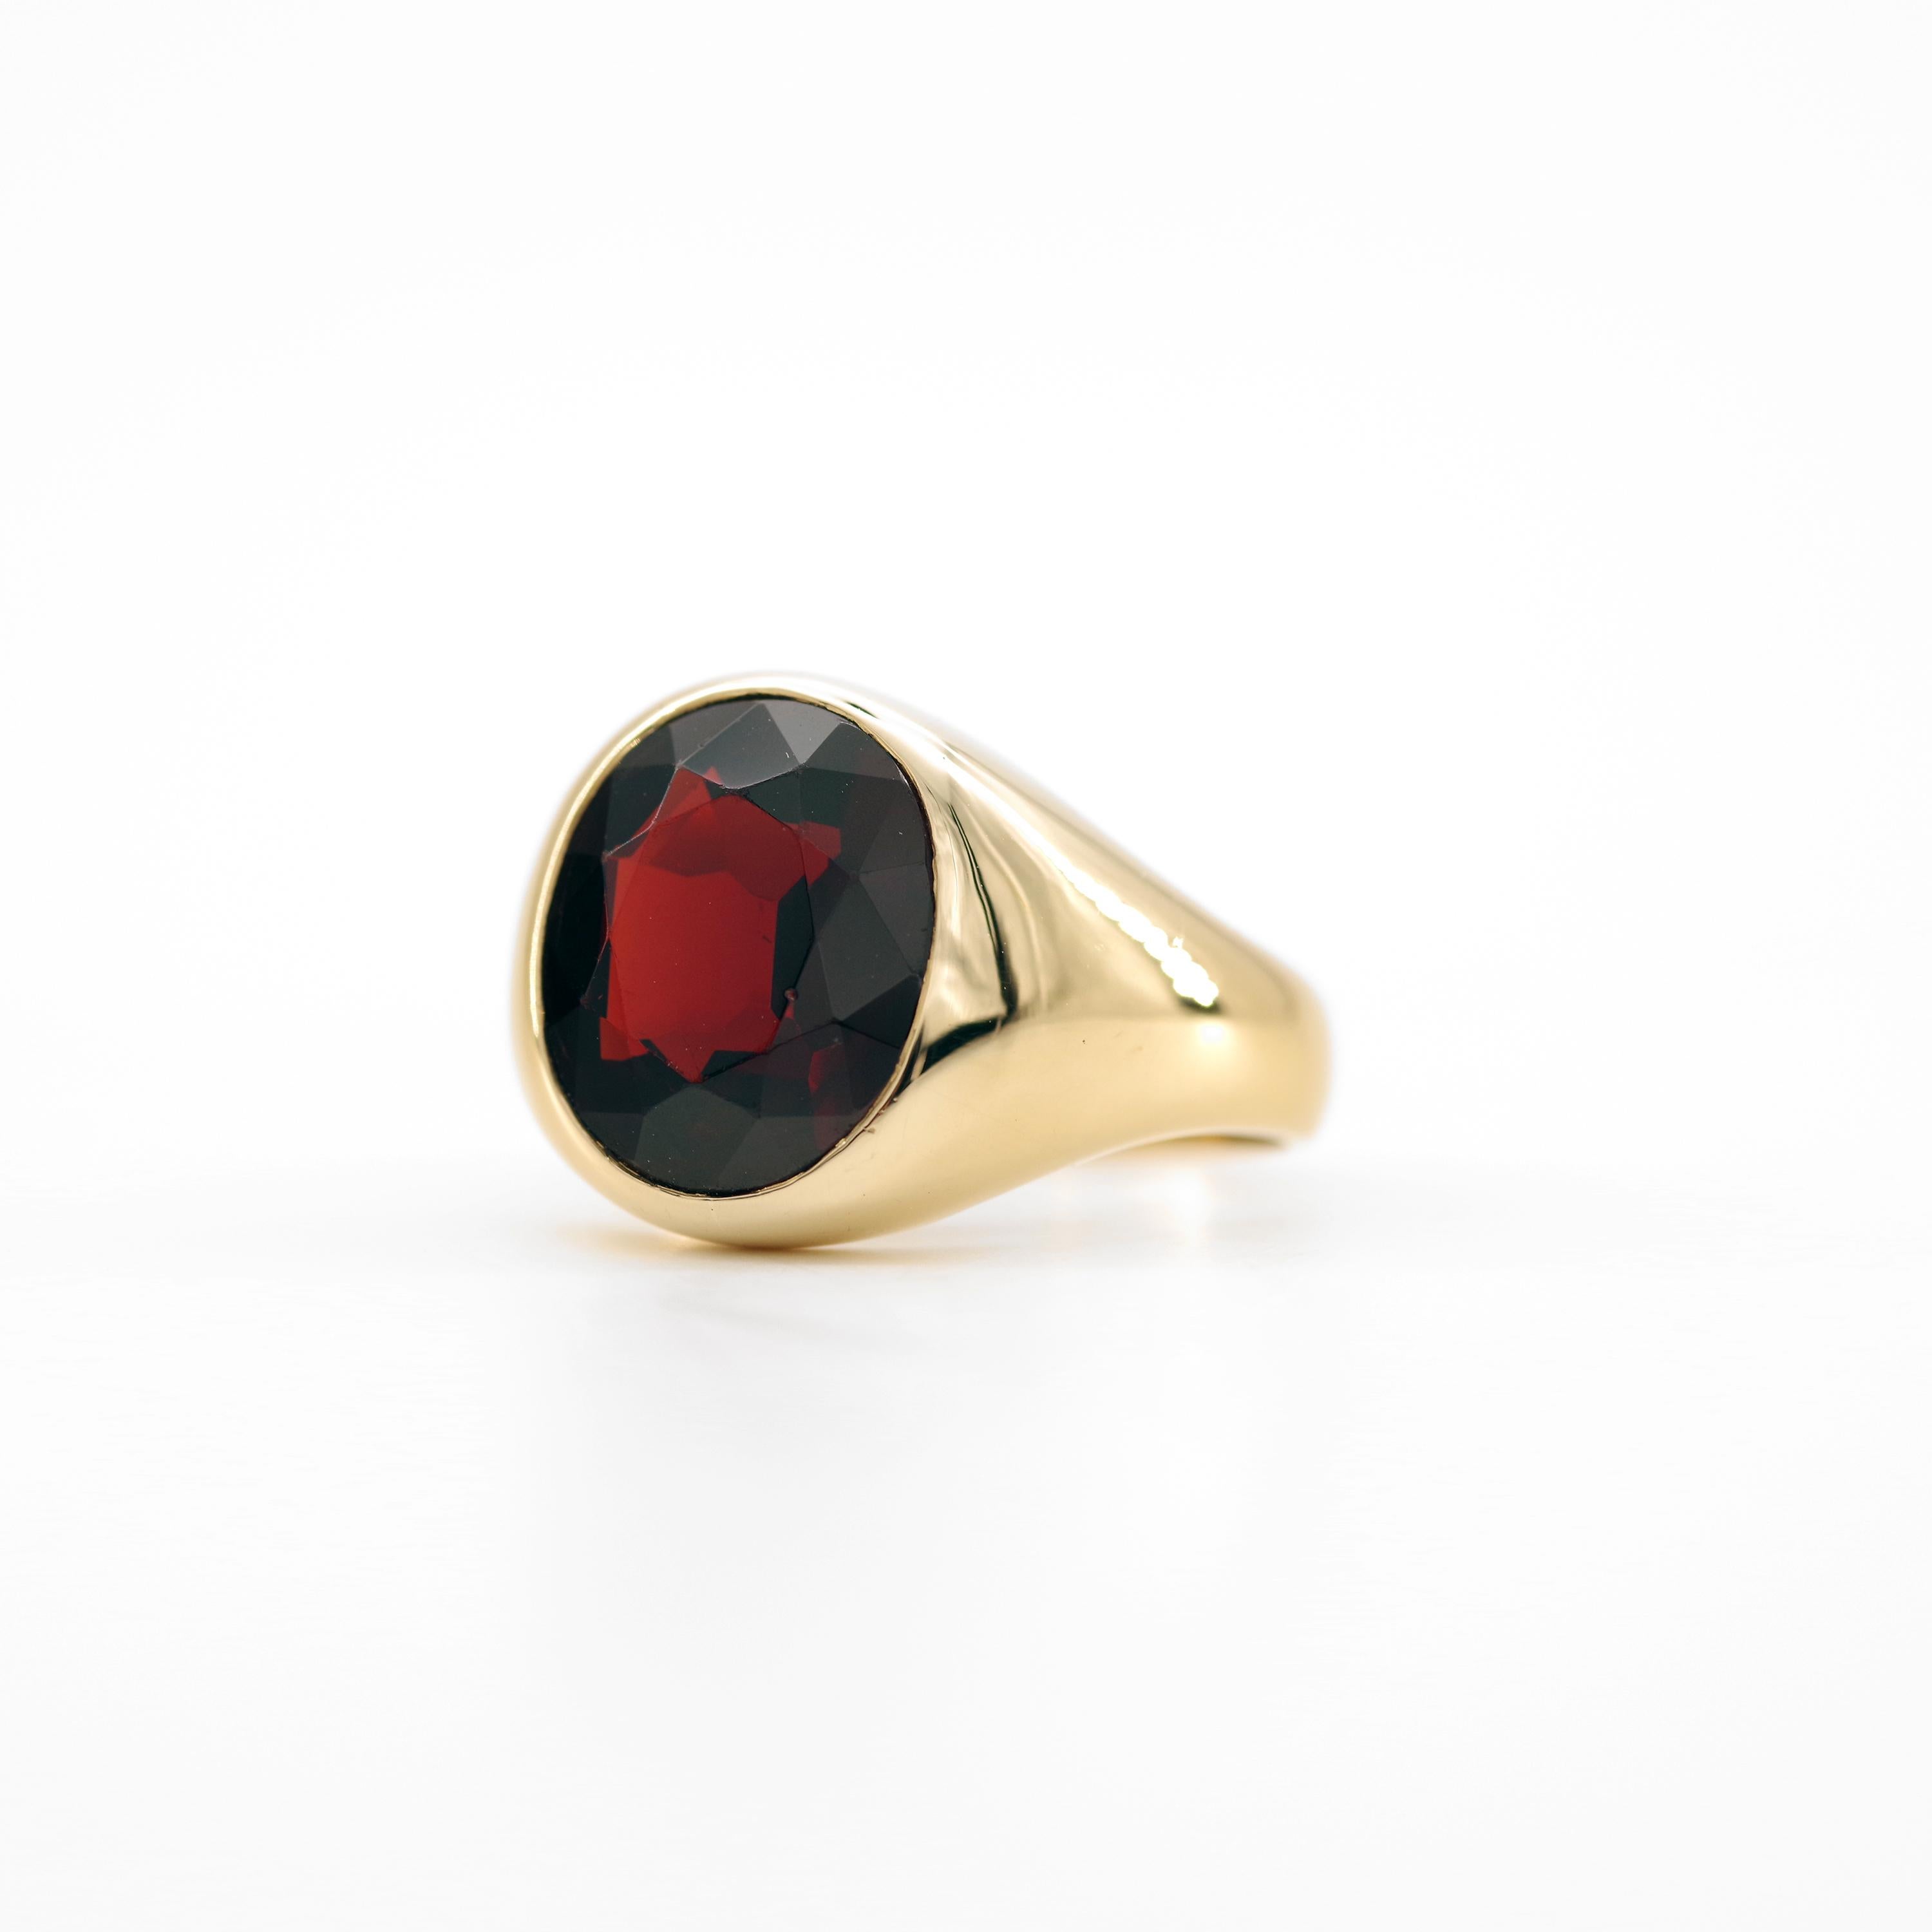 Women's or Men's Men's Art Deco Garnet Ring is a Masterpiece of Understatement